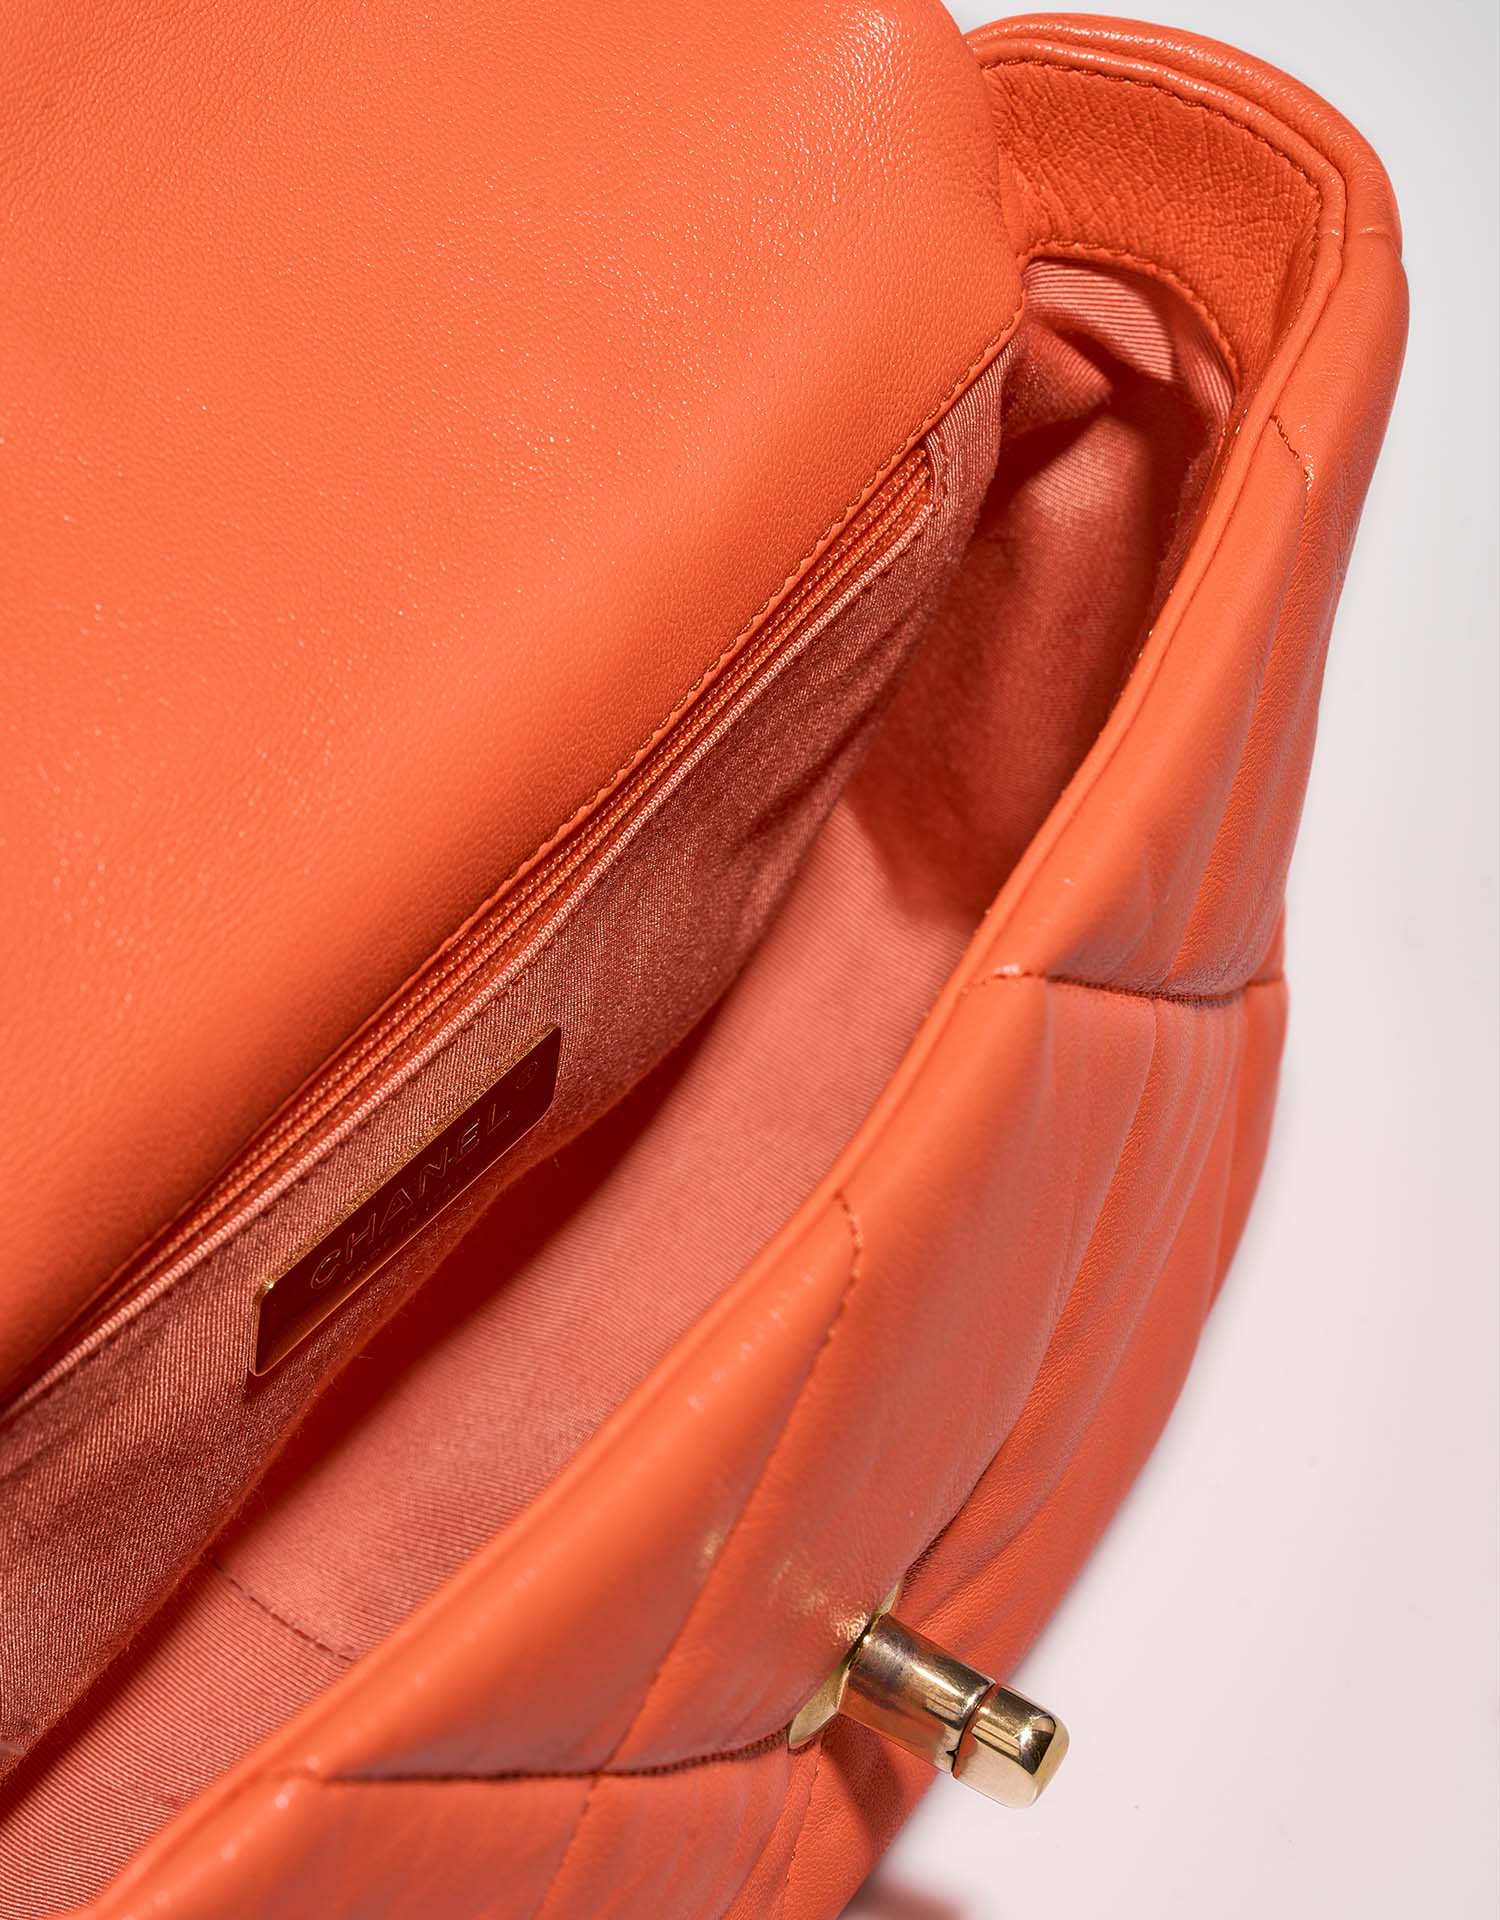 Chanel 19 FlapBag Orange Inside | Verkaufen Sie Ihre Designer-Tasche auf Saclab.com